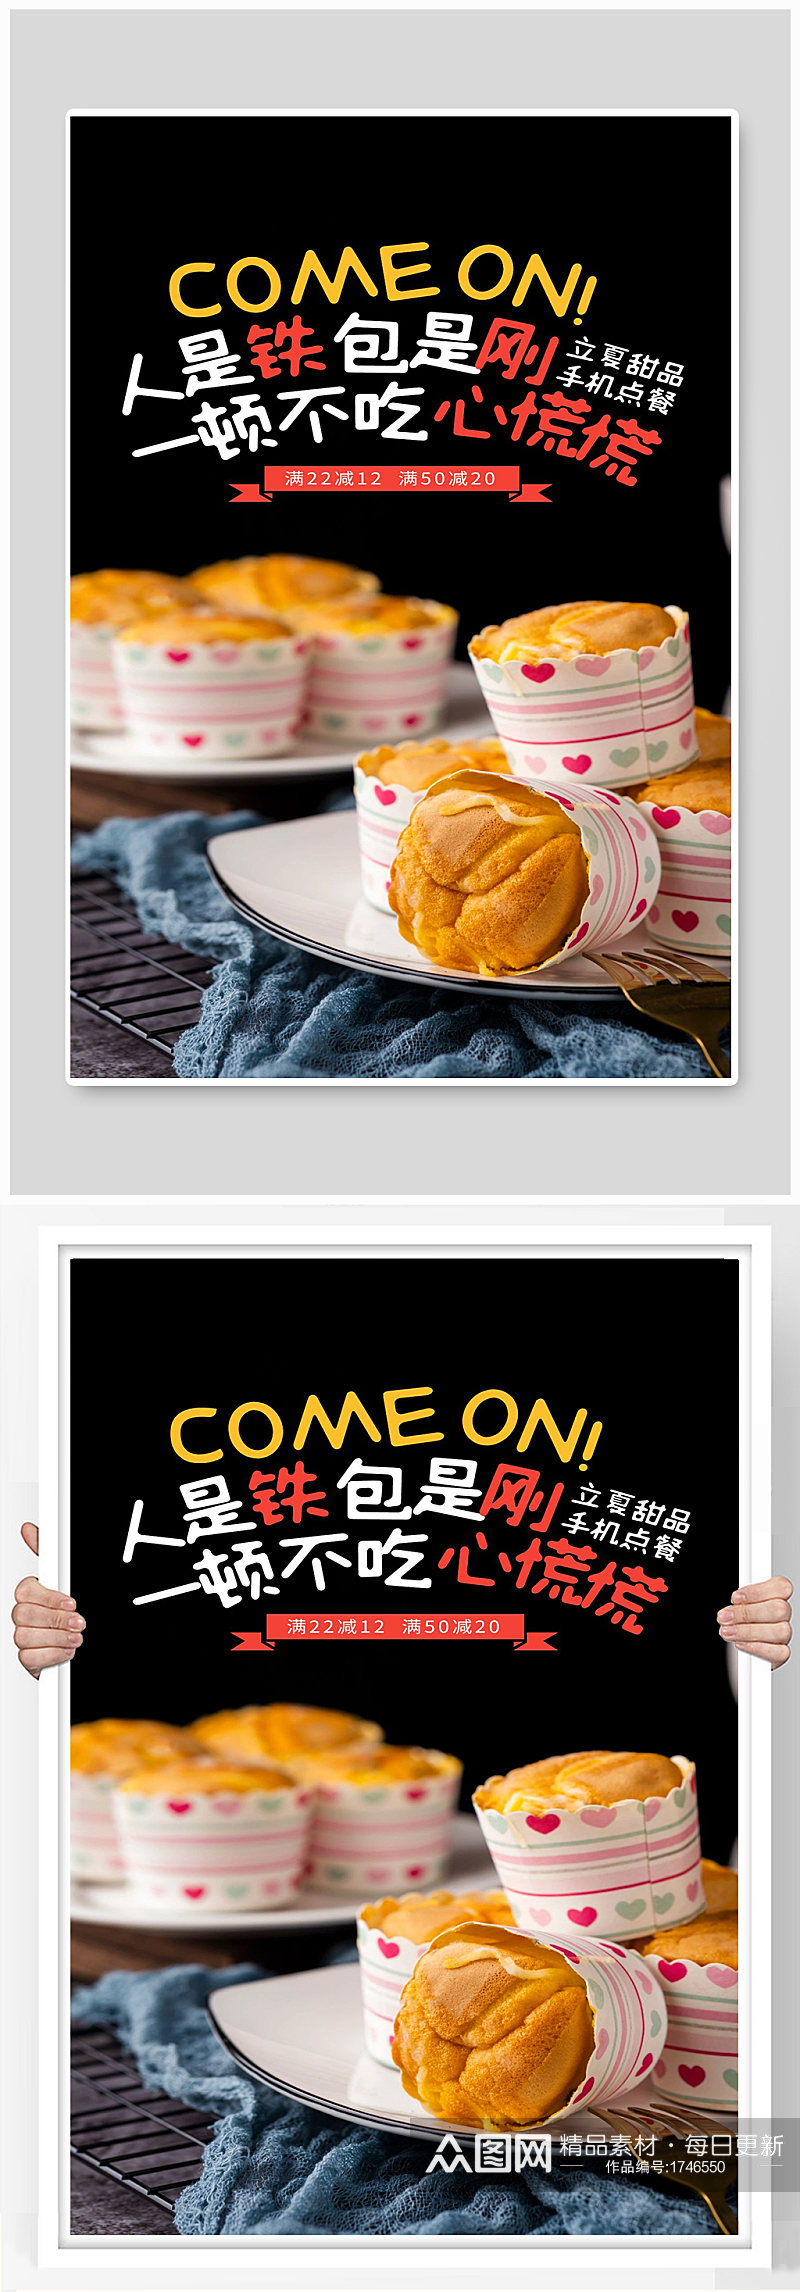 面包宣传海报设计制作设计素材